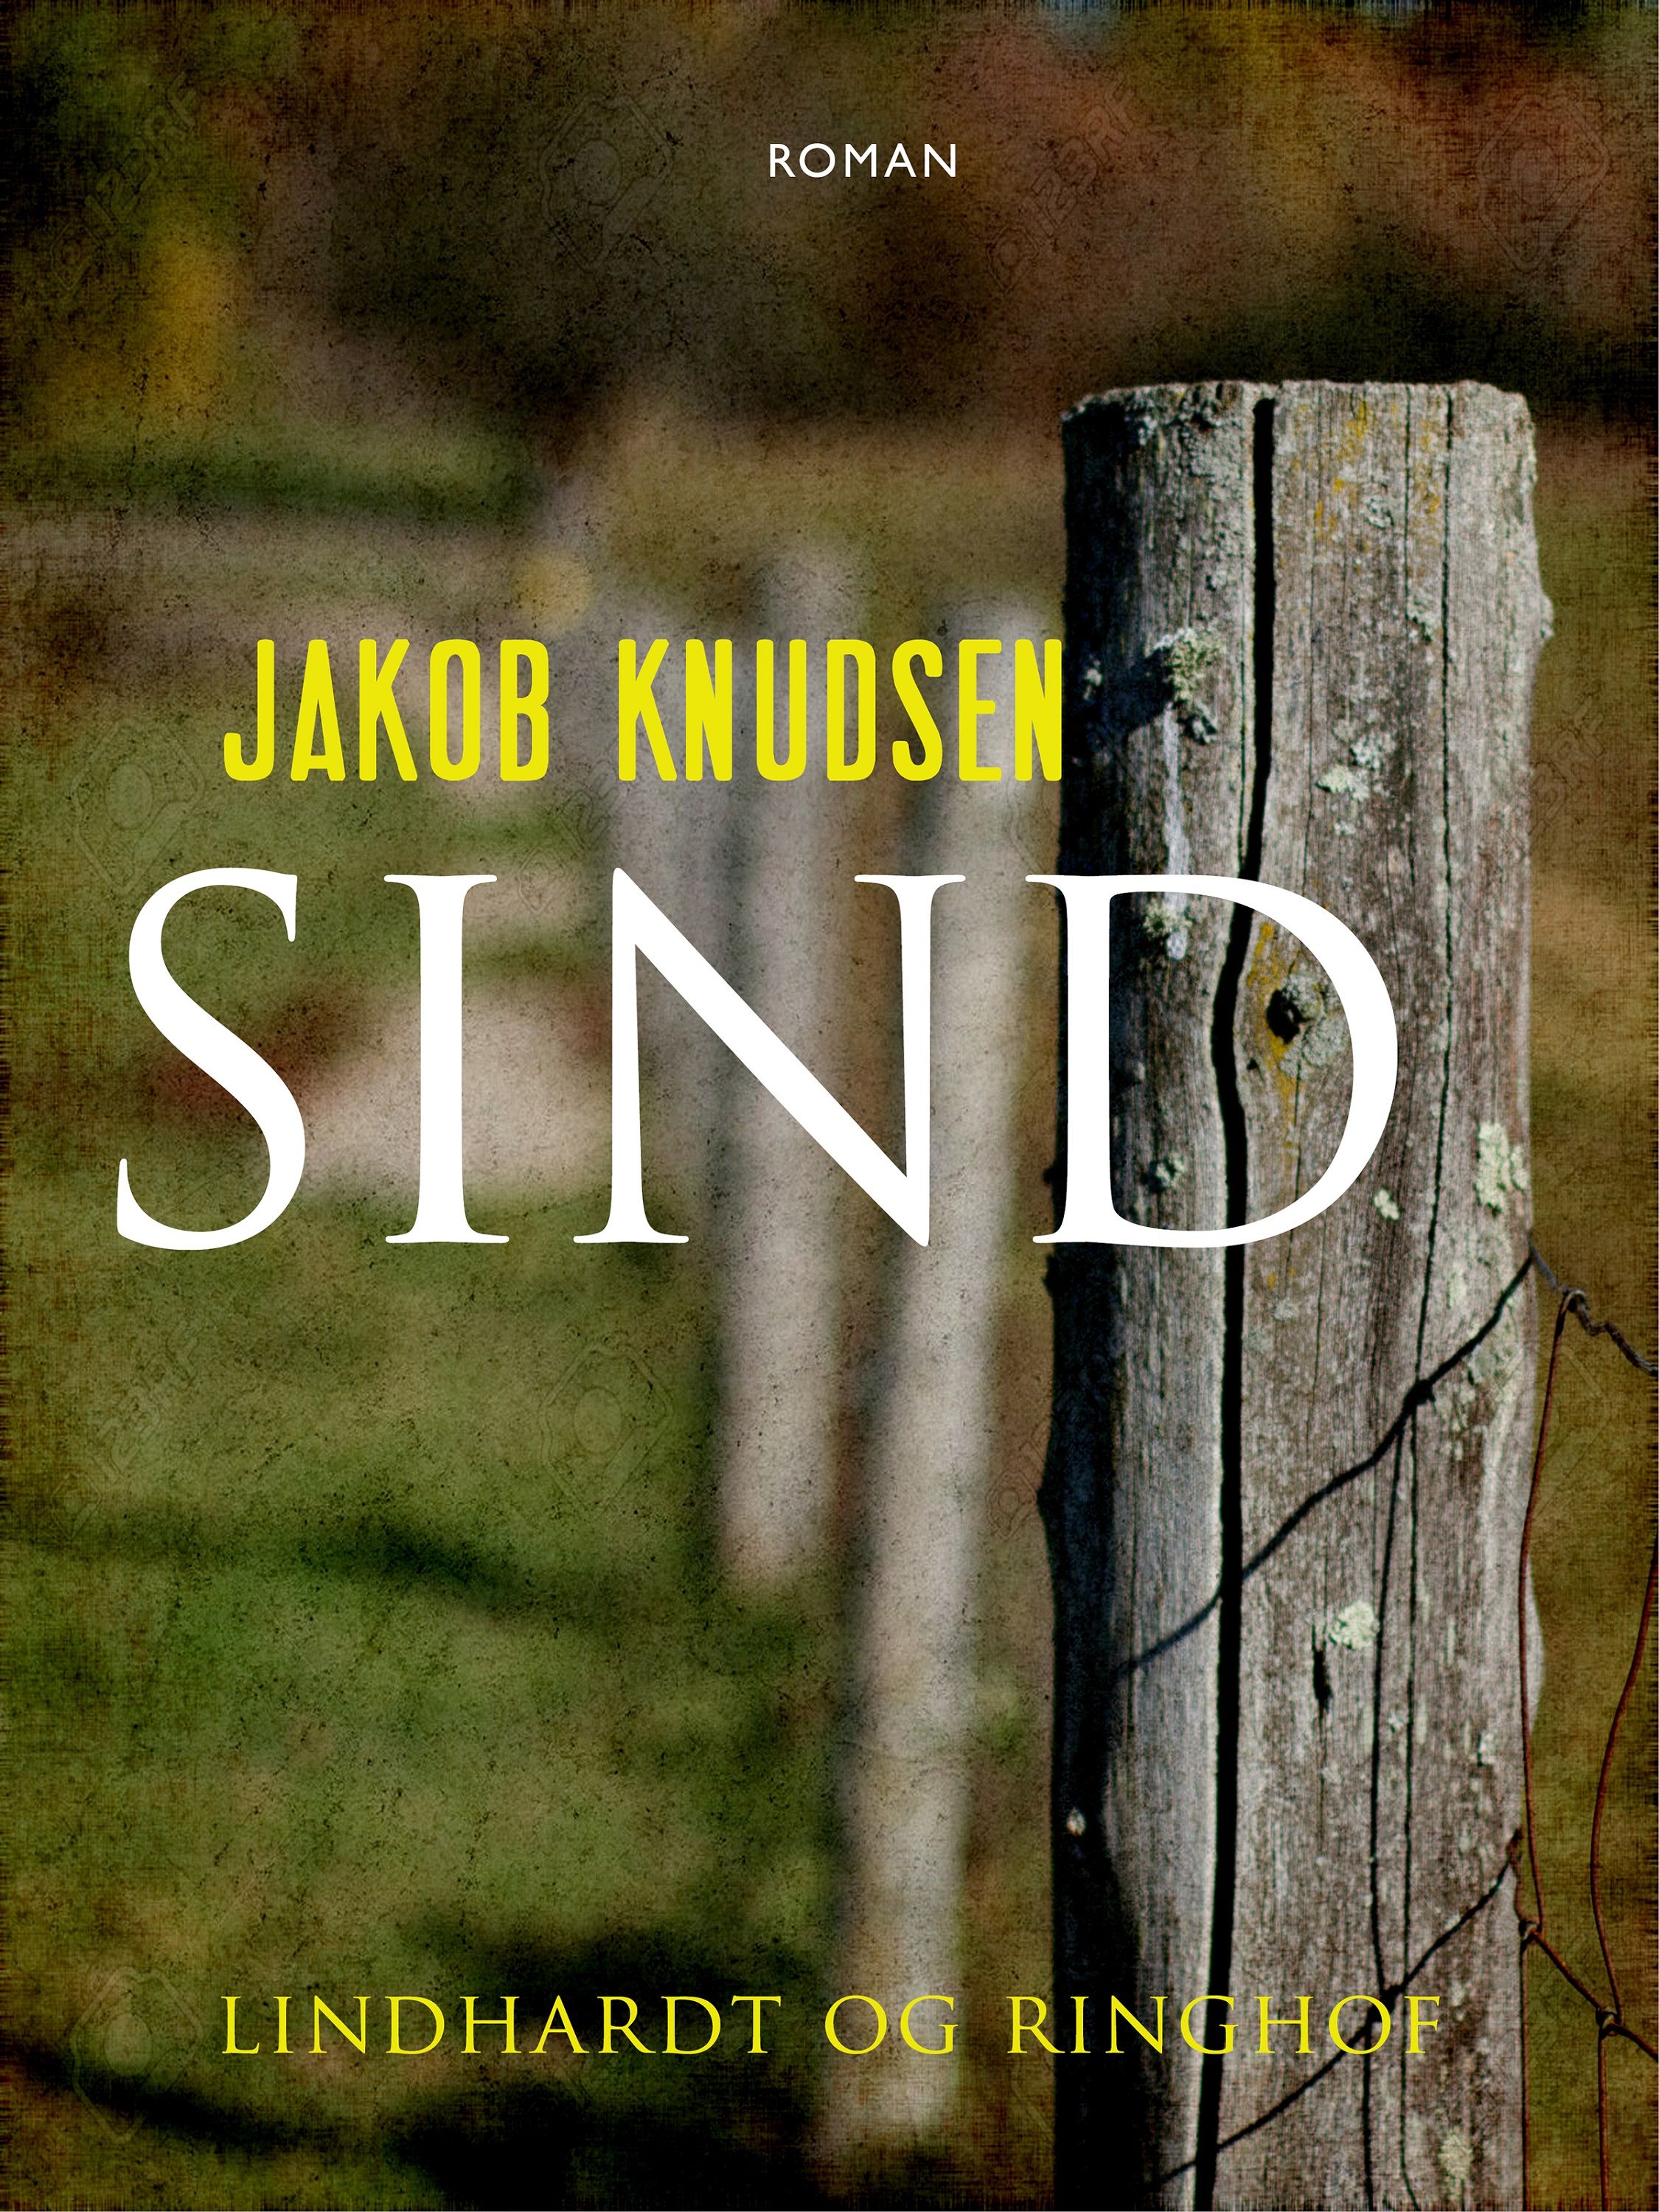 Sind, lydbog af Jakob Knudsen